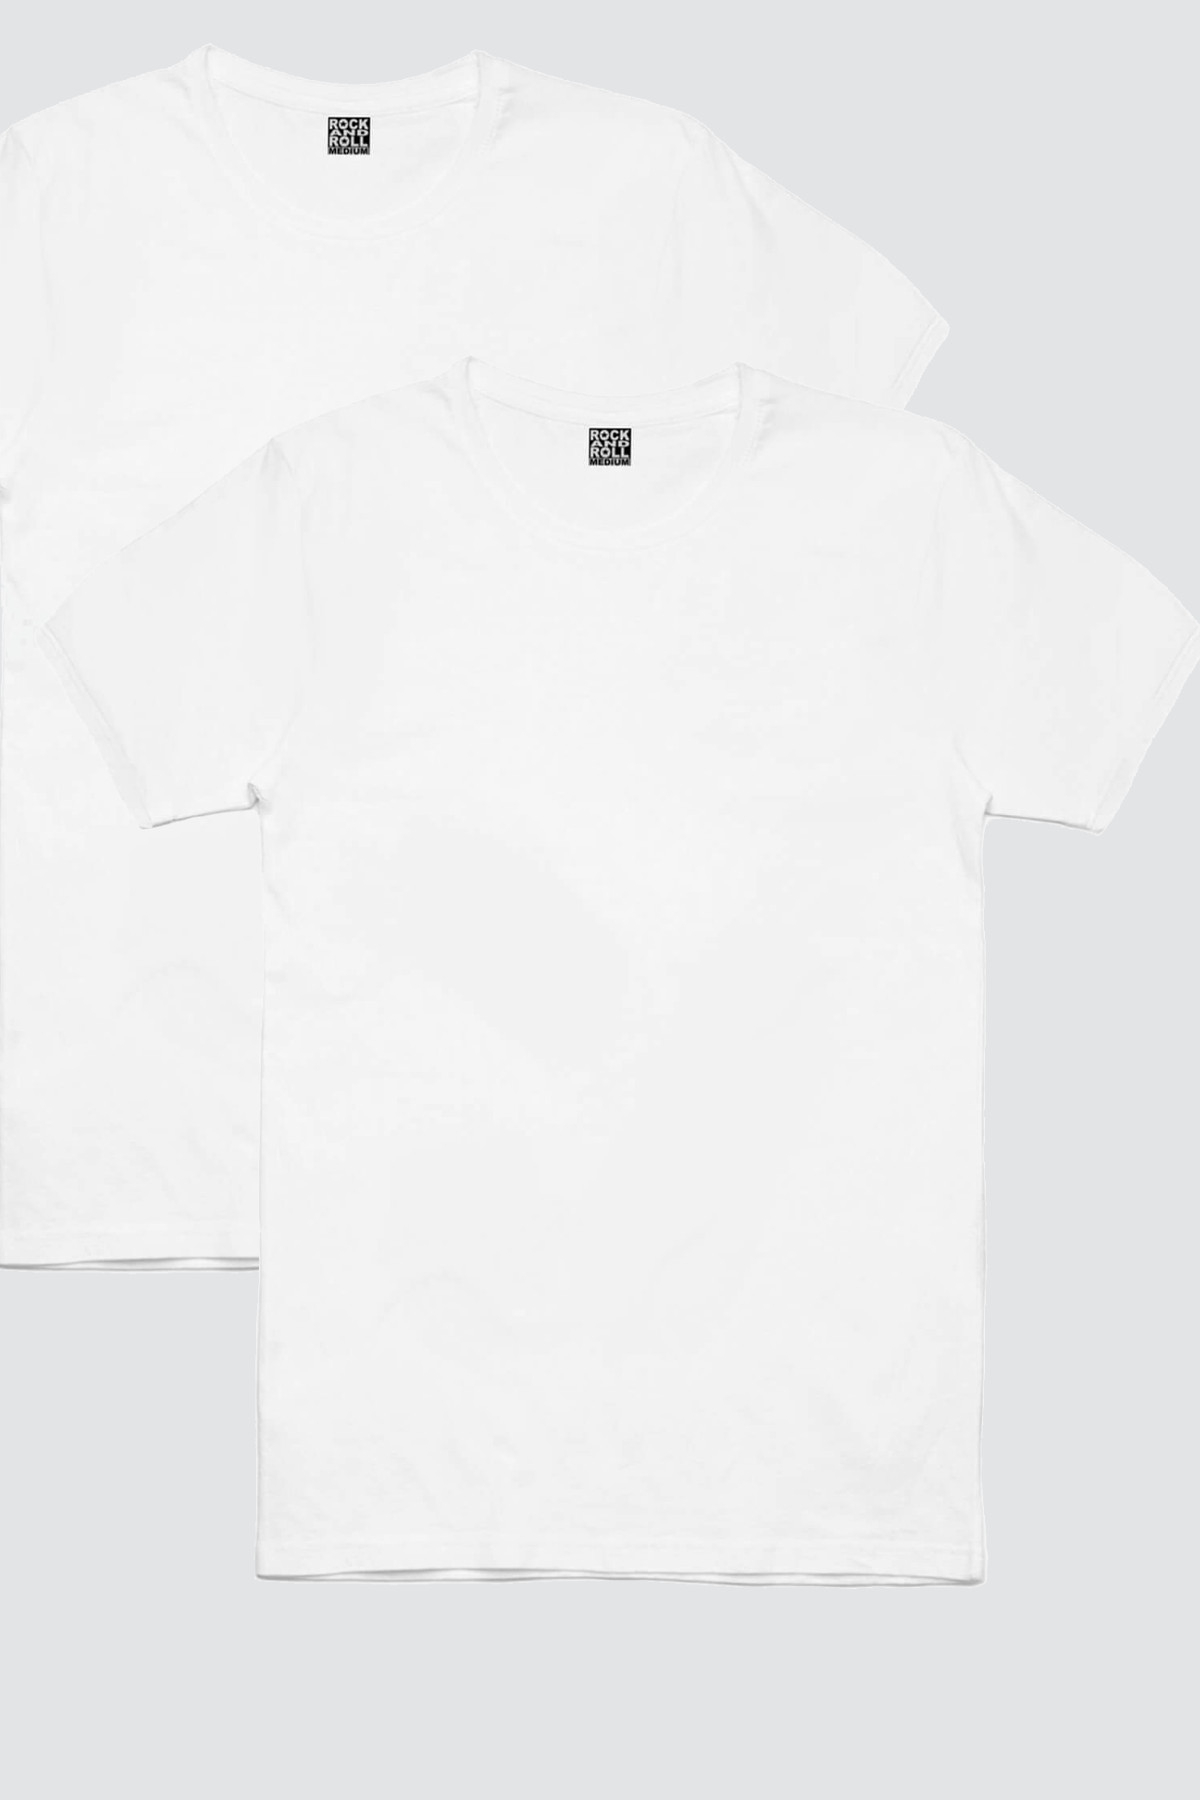 Düz, Baskısız Beyaz Kadın 2'li Eko Paket T-shirt